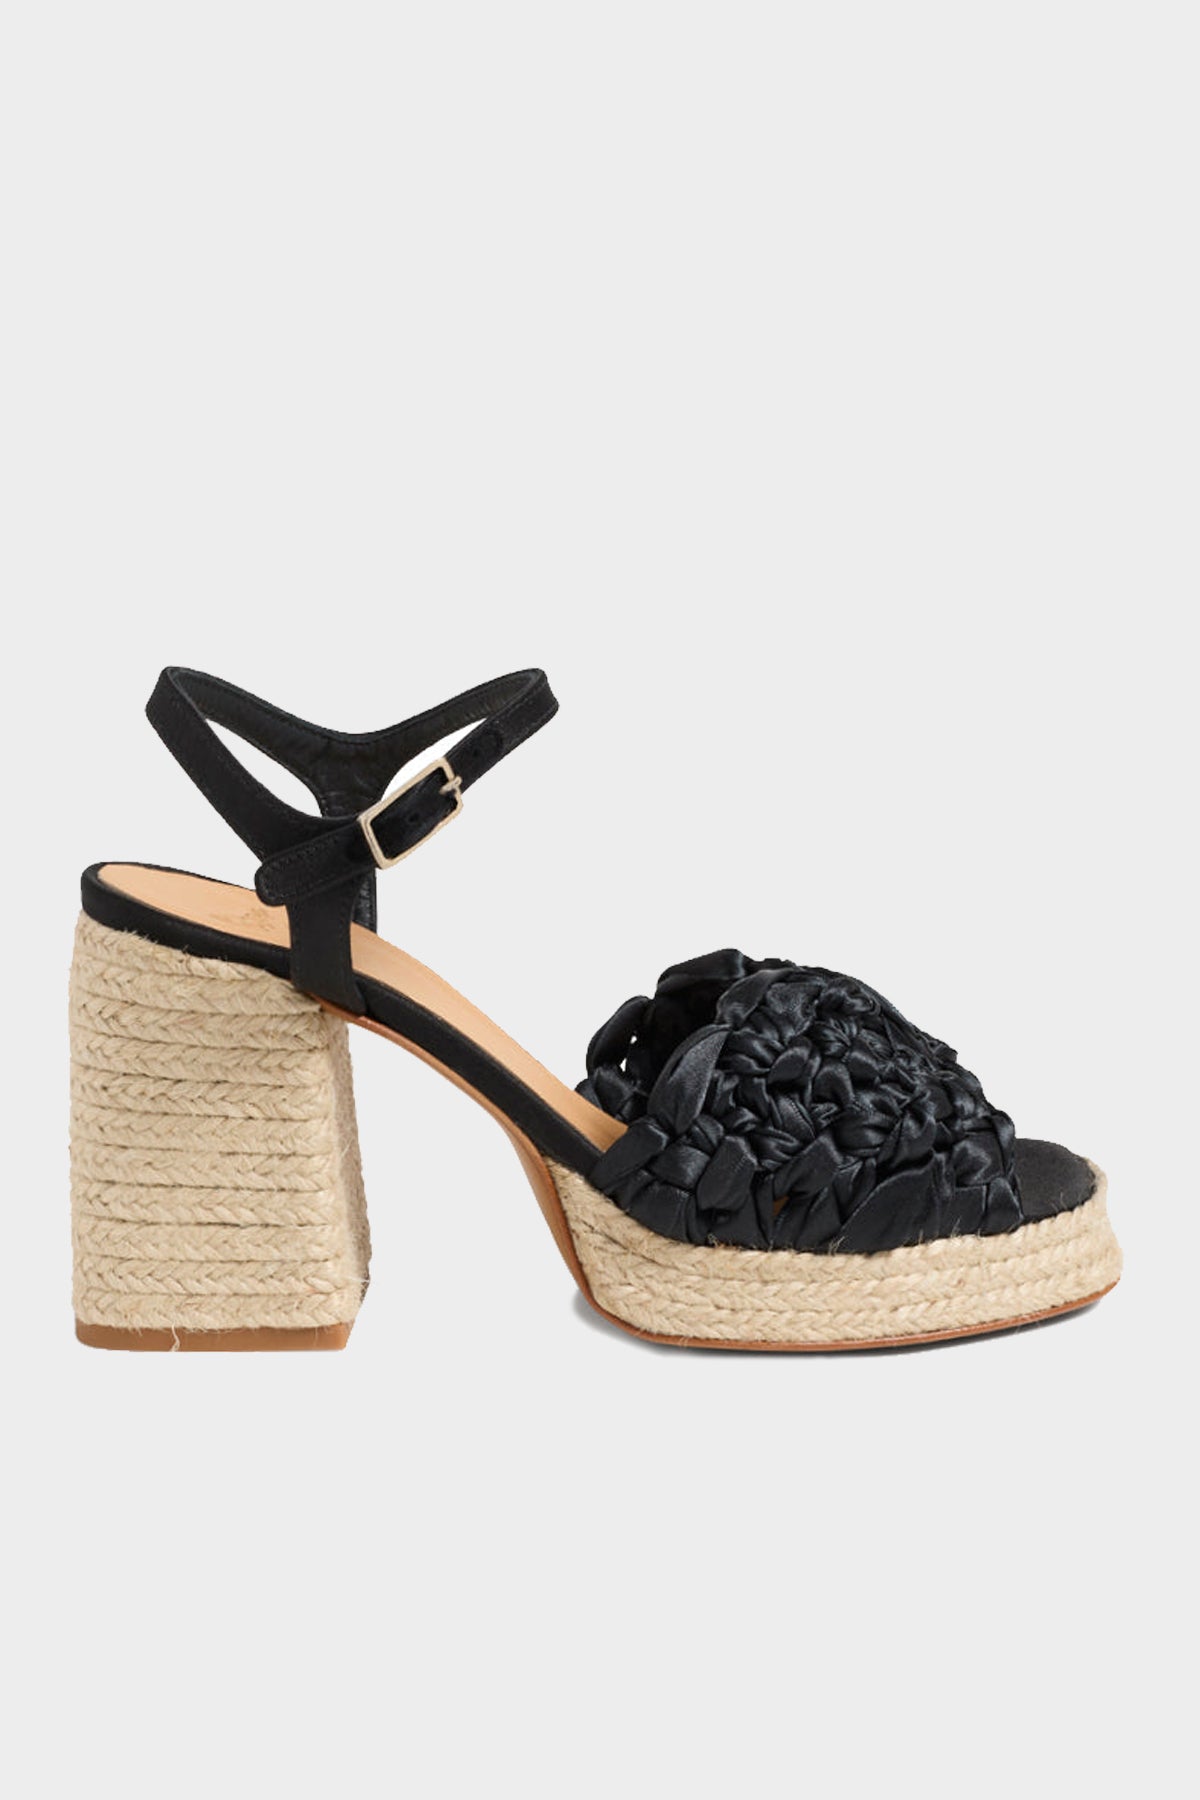 Vincenza Platform Sandal in Negro - shop-olivia.com